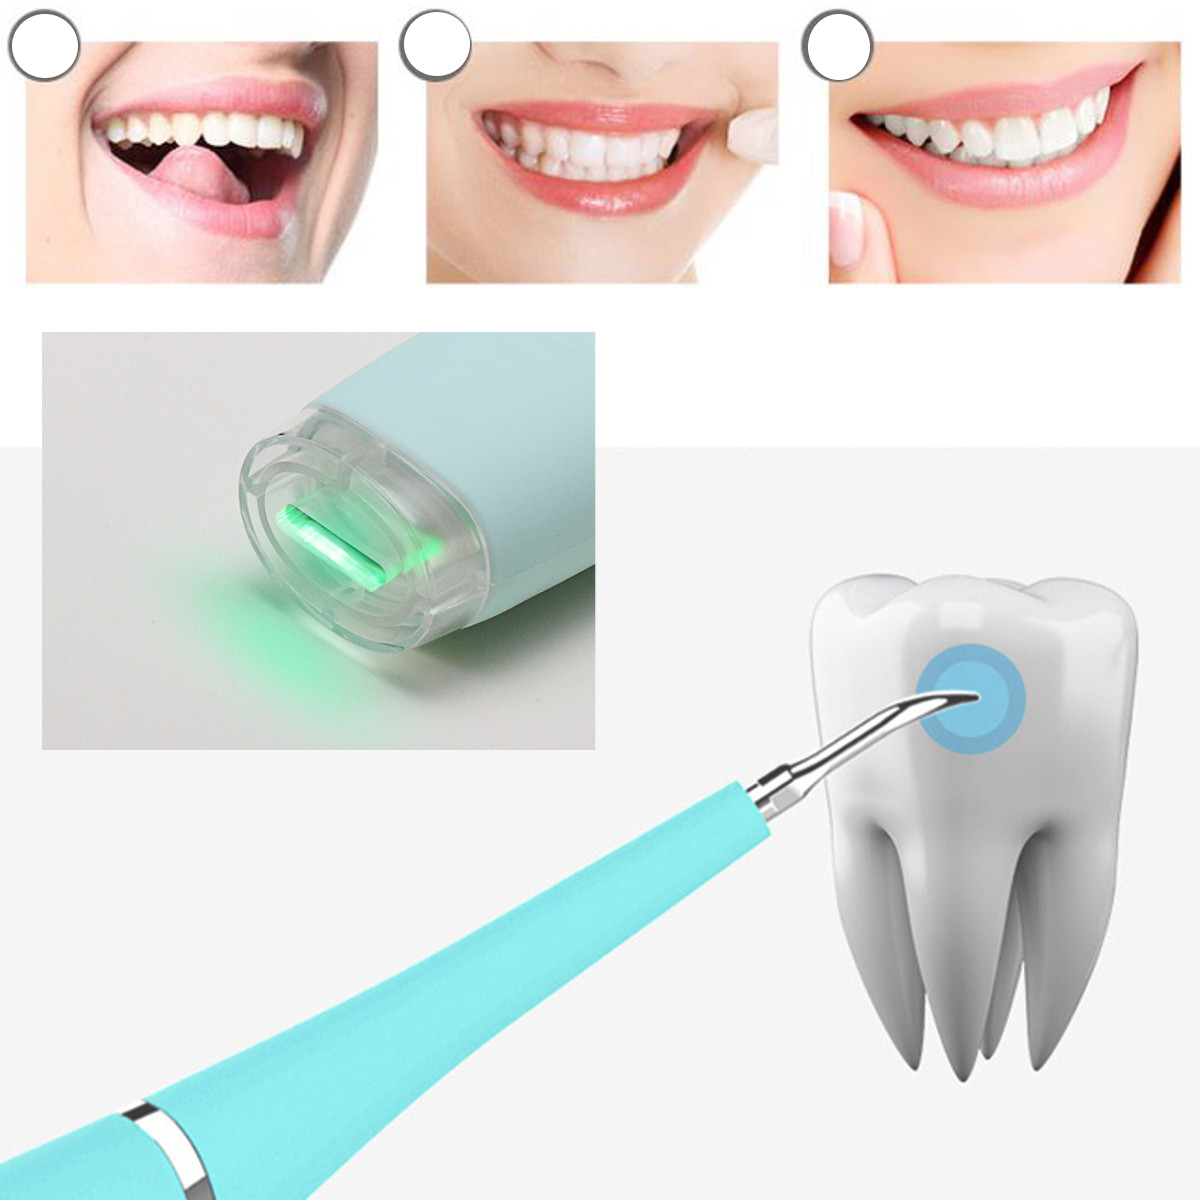 Как называется инструмент для чистки зубов ультразвуком. Прибор для снятия зуба. Приспособление для зубной нити. Прибор для снятия камней с зубов у стоматолога.